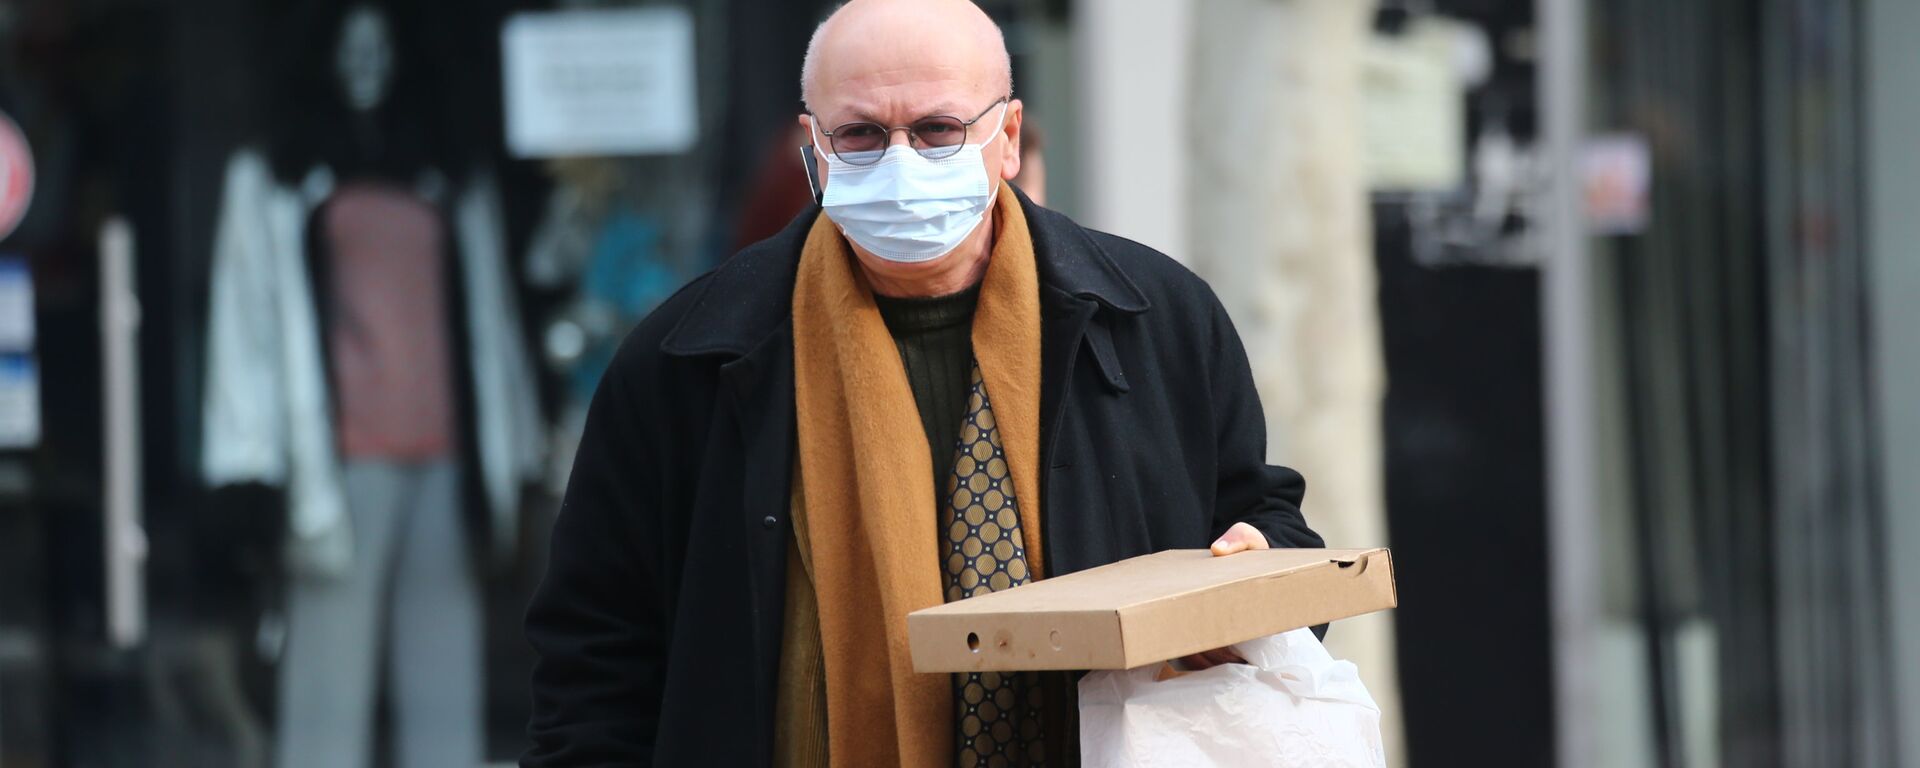 Эпидемия коронавируса - пожилой мужчина в маске и очках идет с покупками по торговому центру - Sputnik Грузия, 1920, 21.11.2021